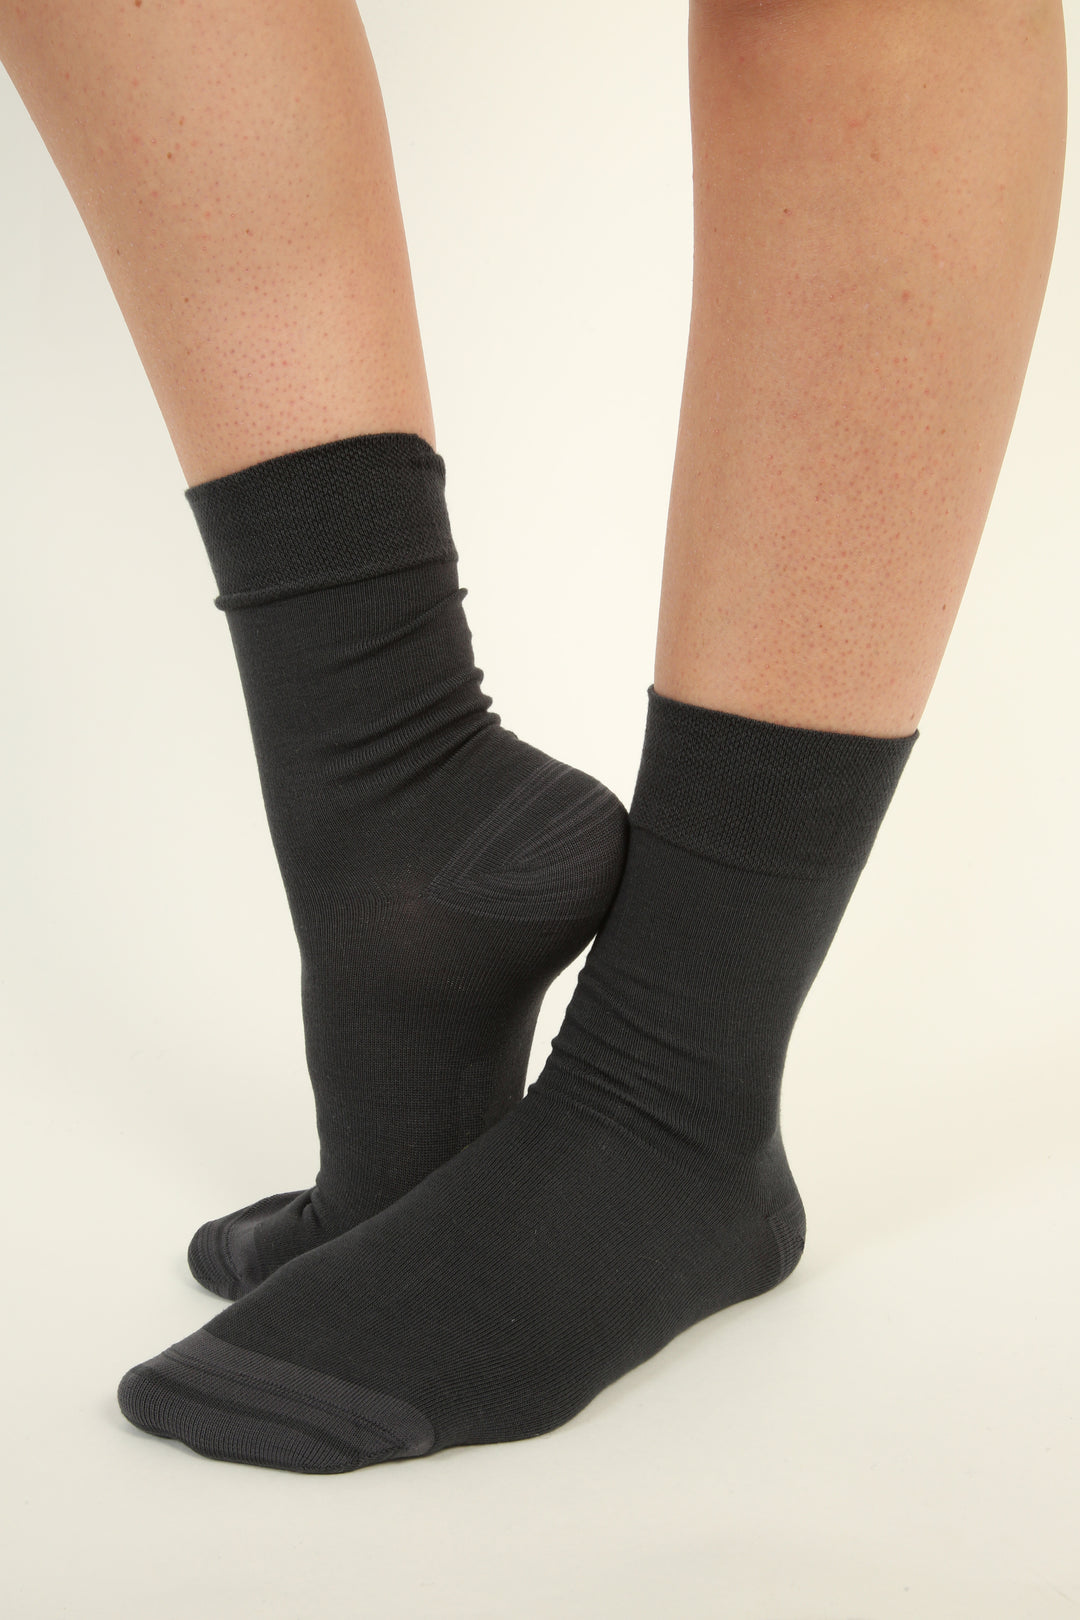 Darker seamless Bamboo Socks - 6 pairs